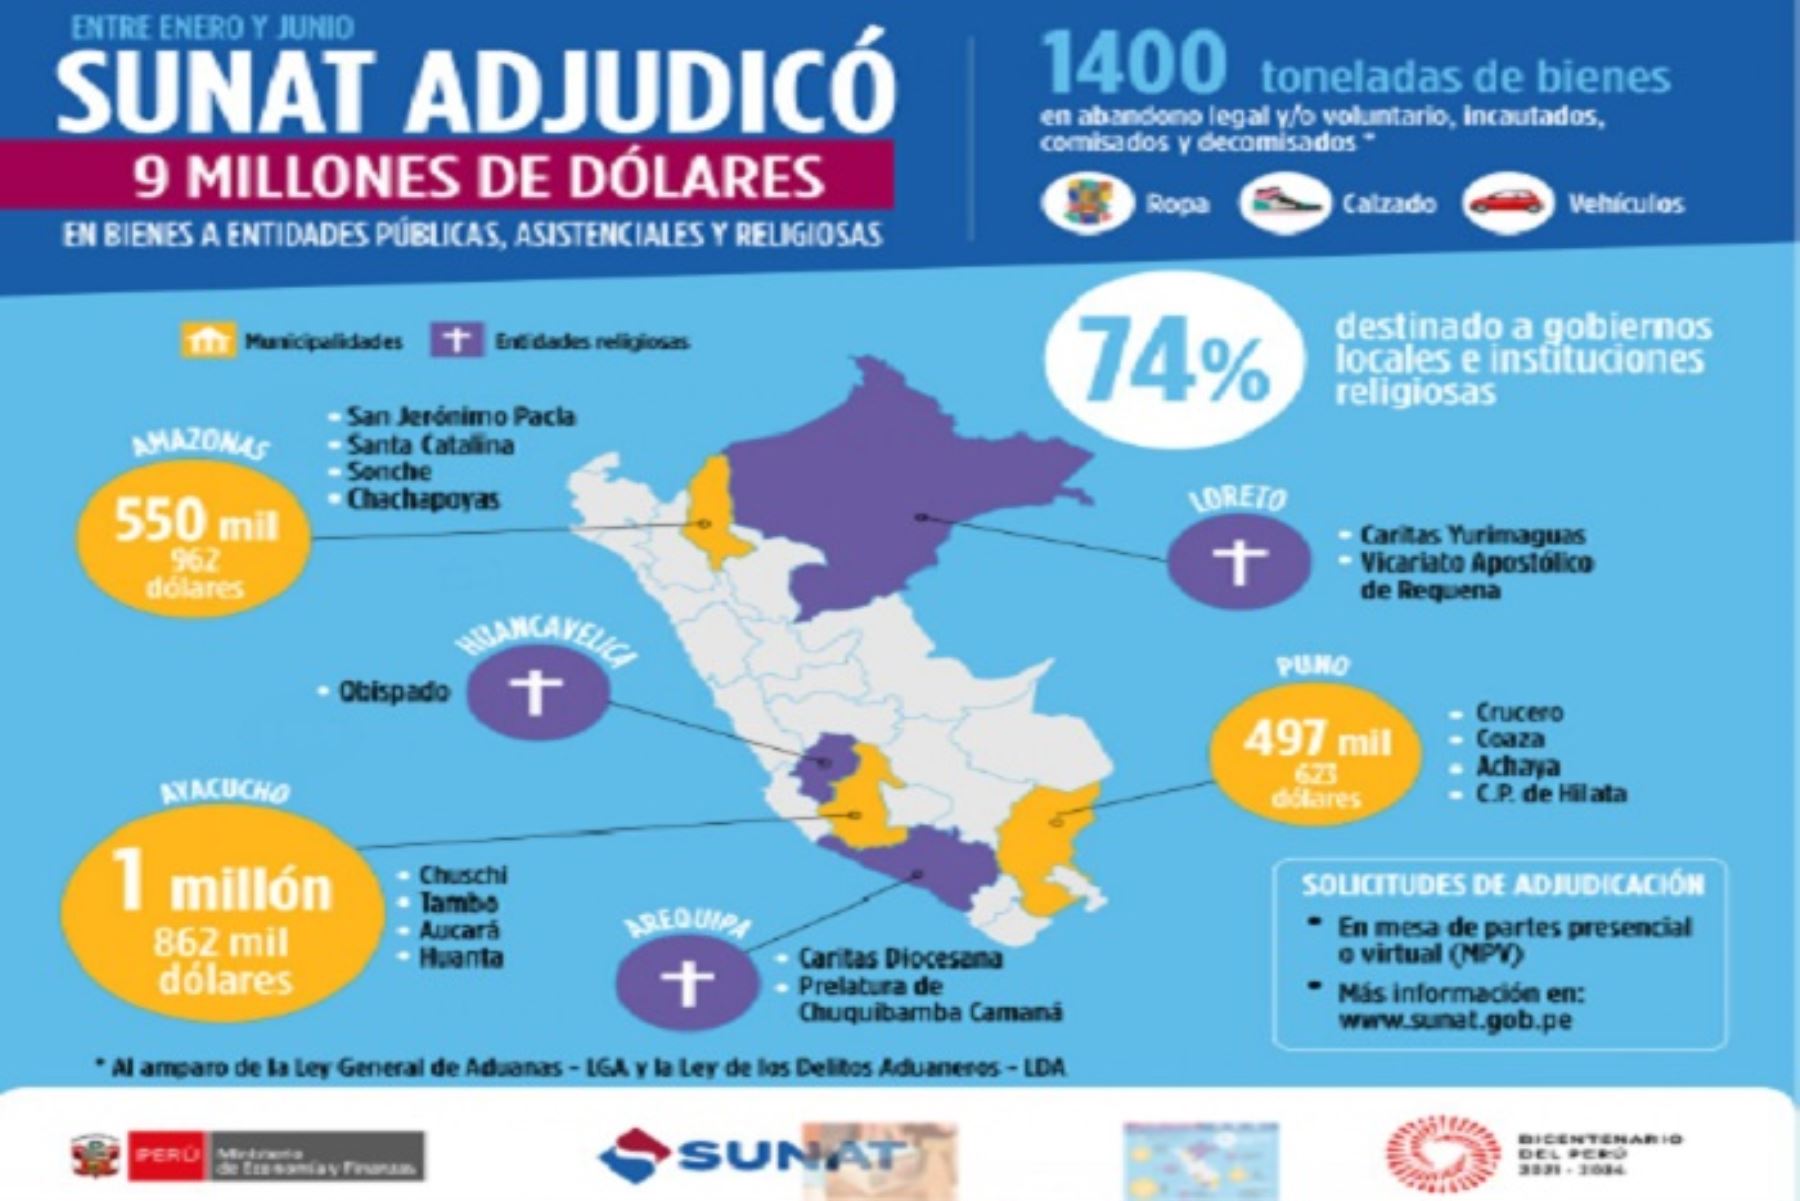 Ayacucho, Arequipa, Huancavelica y Loreto son las regiones más beneficiadas con los bienes adjudicados.